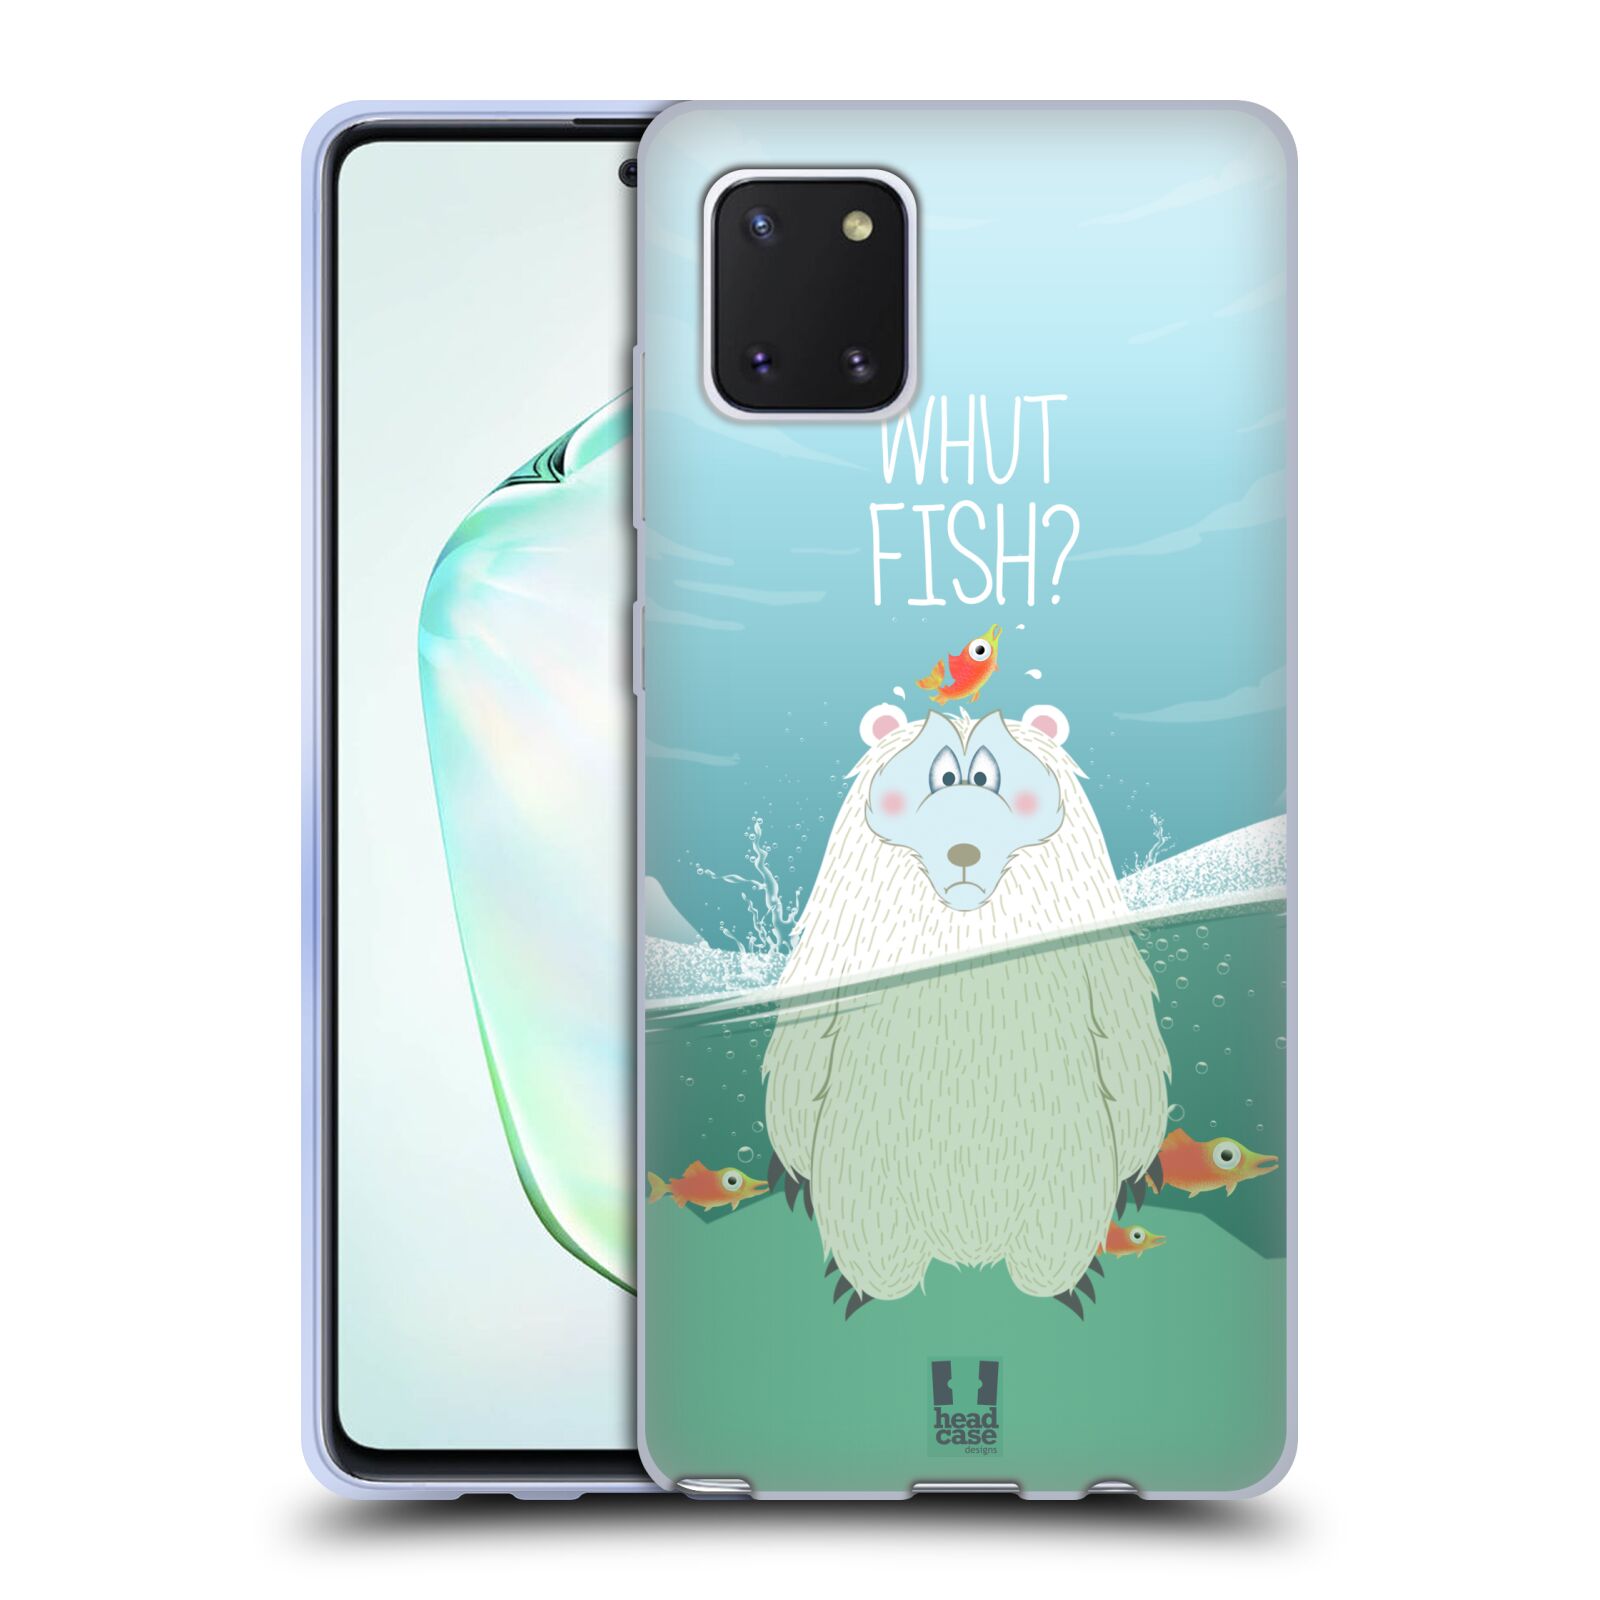 Silikonové pouzdro na mobil Samsung Galaxy Note 10 Lite - Head Case - Medvěd Whut Fish?